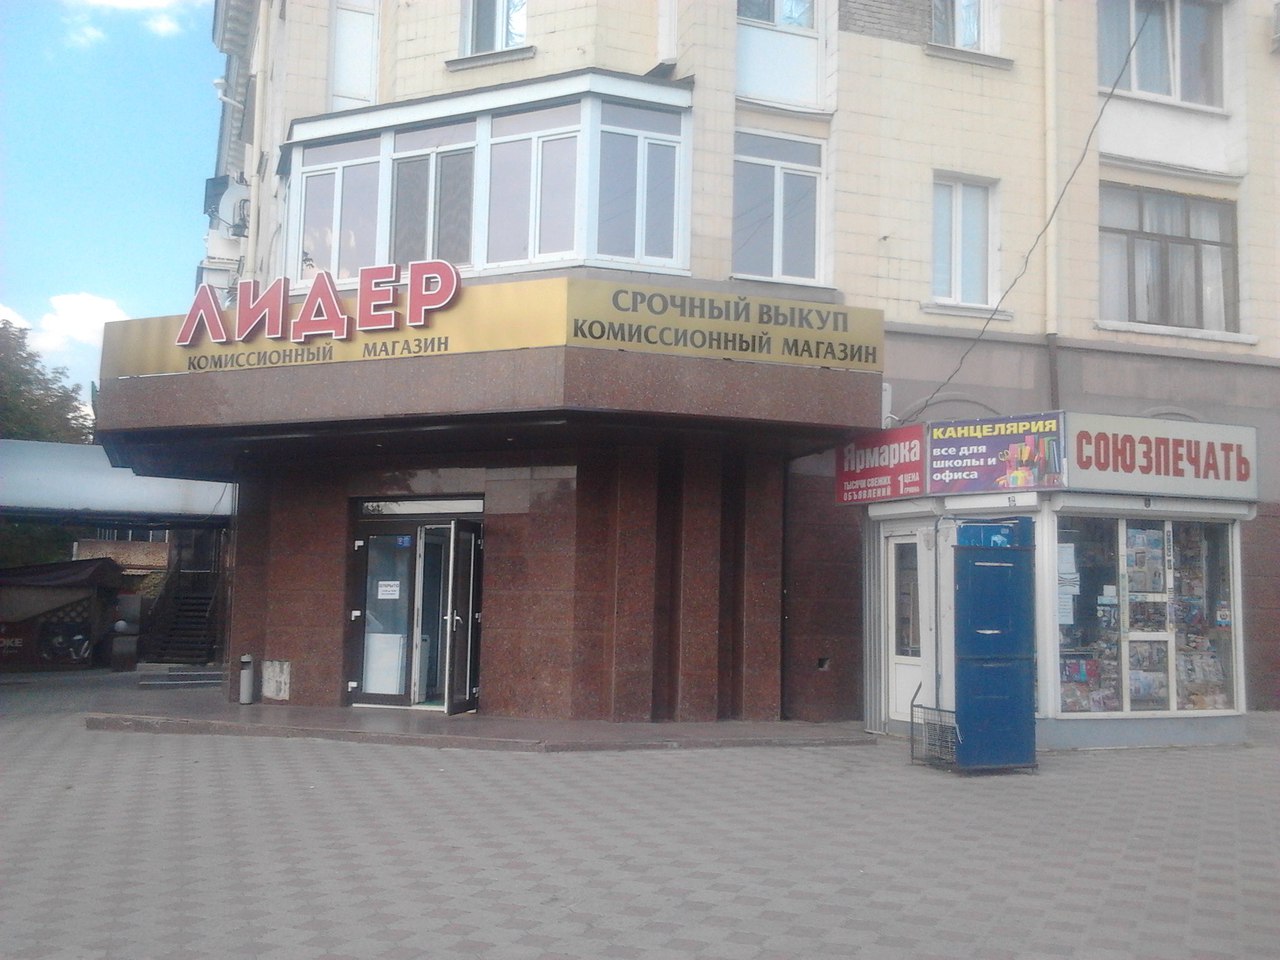 "Зато в городе чисто...!" - в соцсетях едко прокомментировали открытие  комиссионки на месте самого дорогого магазина в  Луганске